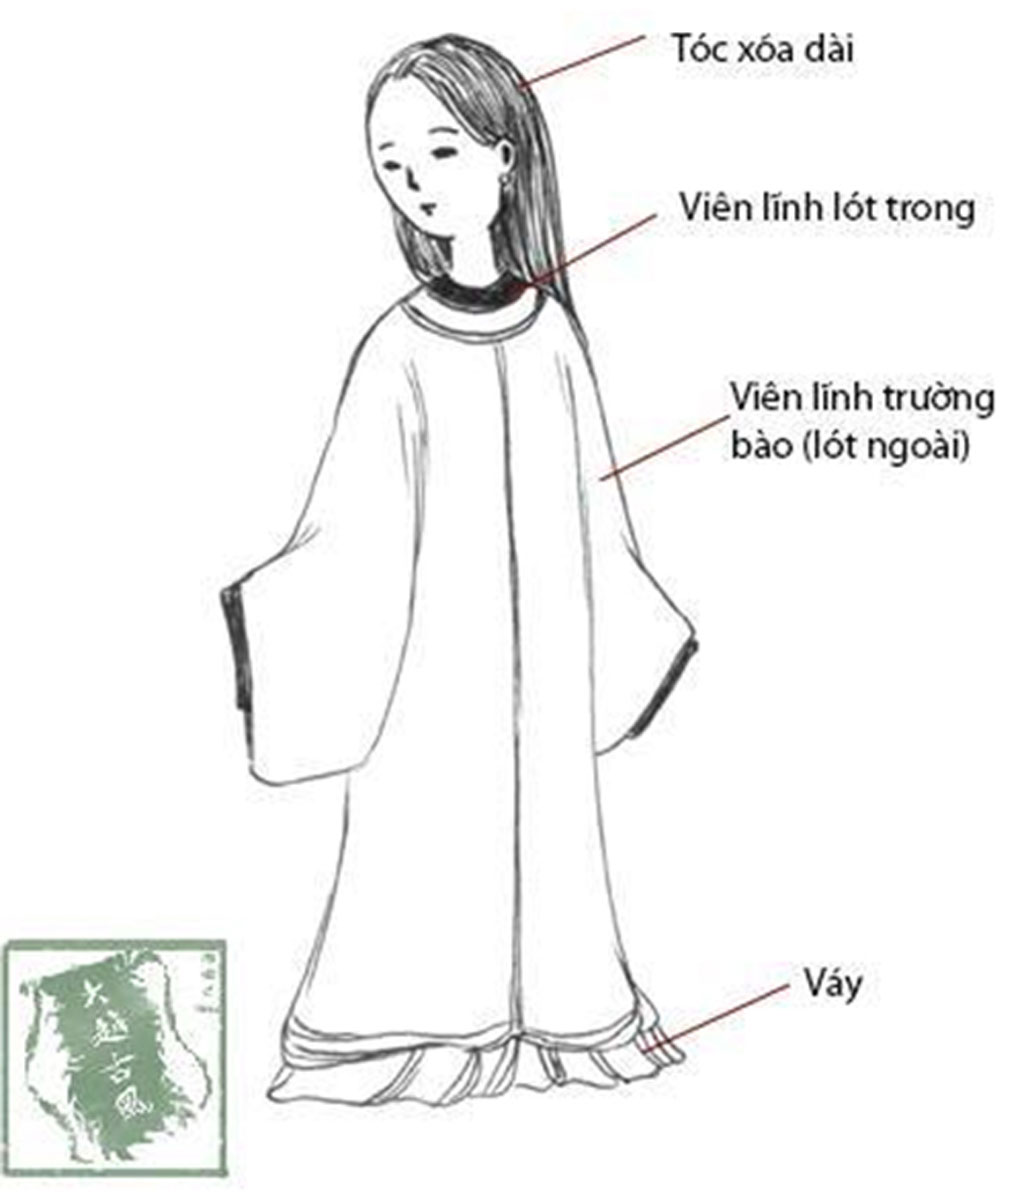 Áo dài truyền thống - biểu tượng văn hóa đặc trưng của Việt Nam. Hãy cùng chiêm ngưỡng những bộ áo dài thướt tha, duyên dáng trên người con gái Việt Nam, để hiểu rõ hơn về nét đẹp truyền thống của đất nước.